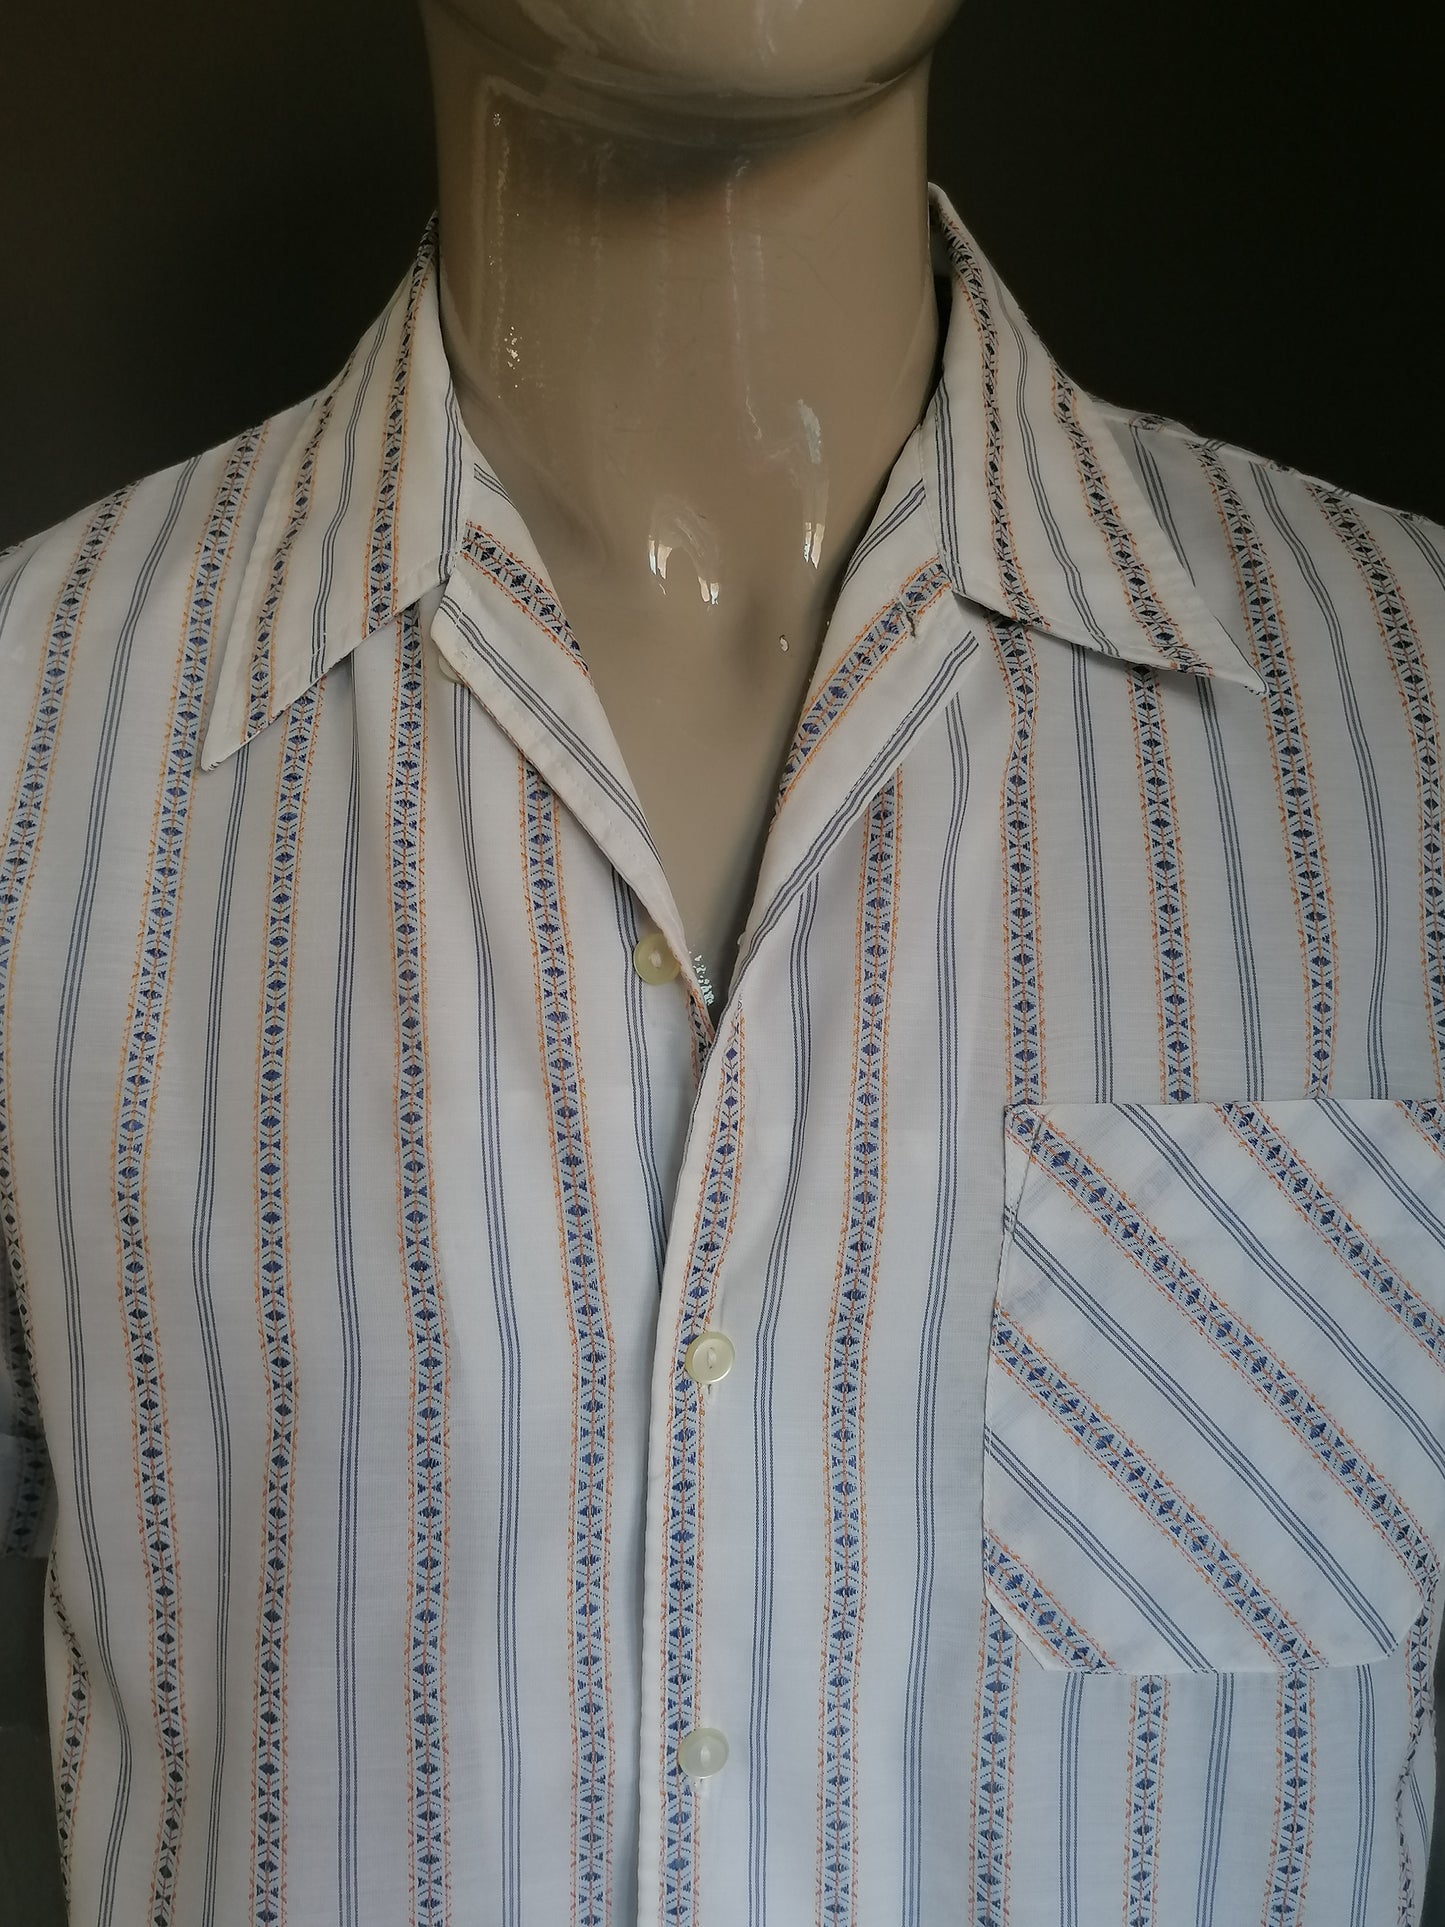 Vintage 70er Hemd Kurzarm mit Punktkragen. Beige blau gelb gestreift. Größe xl.